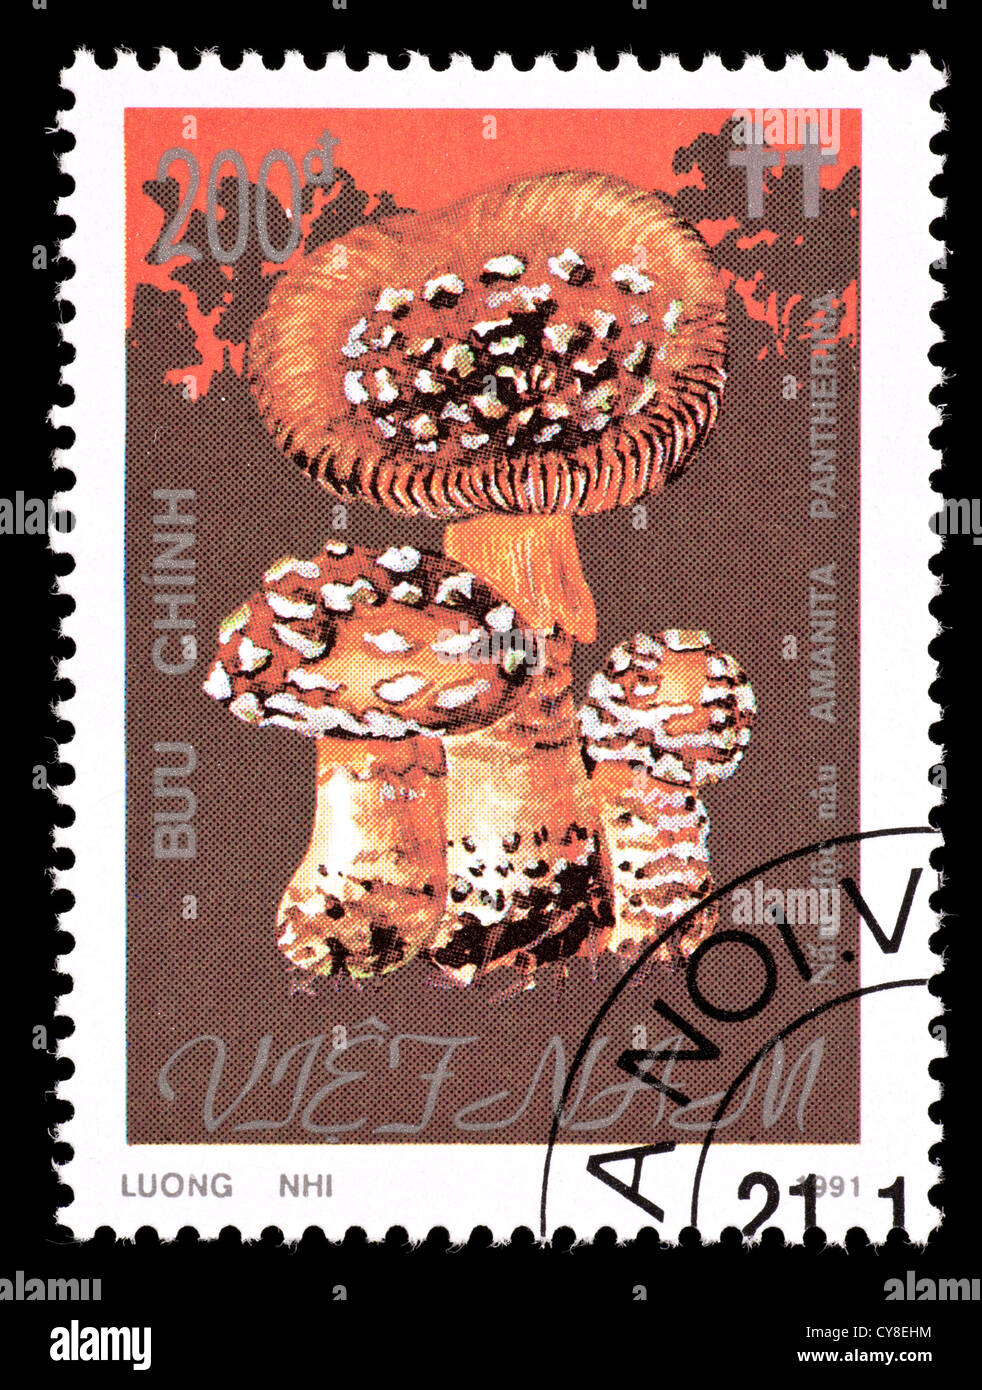 Postage stamp from Vietnam depicting panther mushrooms (Amanita pantherina) Stock Photo